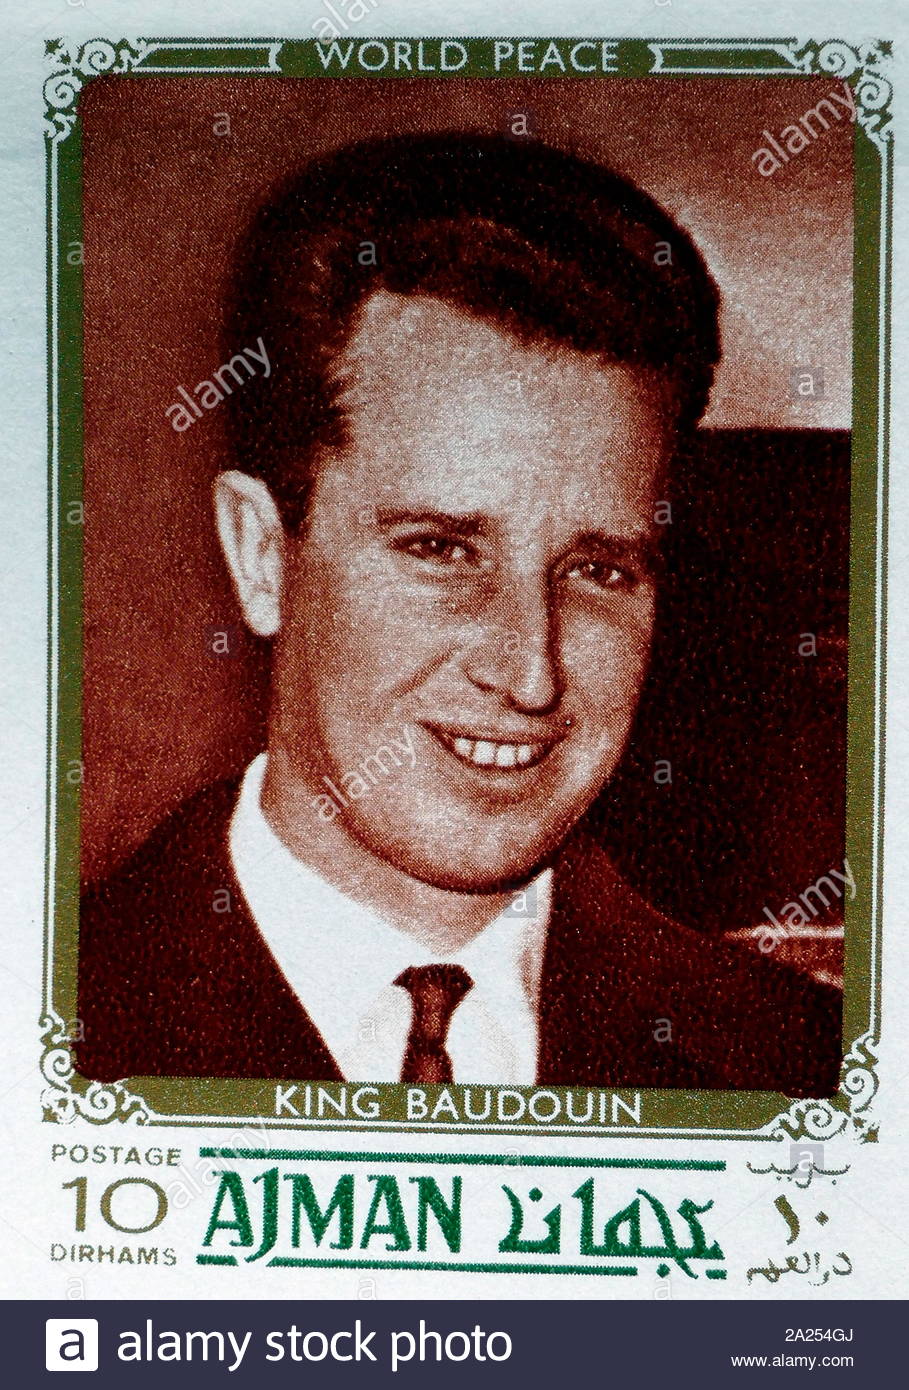 Stempel, Baudouin (1930 - 31. Juli 1993) Der König der Belgier, von 1951 bis zu seinem Tod 1993. Er war der Letzte, der belgische König Souverän der Kongo zu werden. Stempel durch den Zustand von Dubai in den Vereinigten Arabischen Emiraten ausgestellt Stockfoto